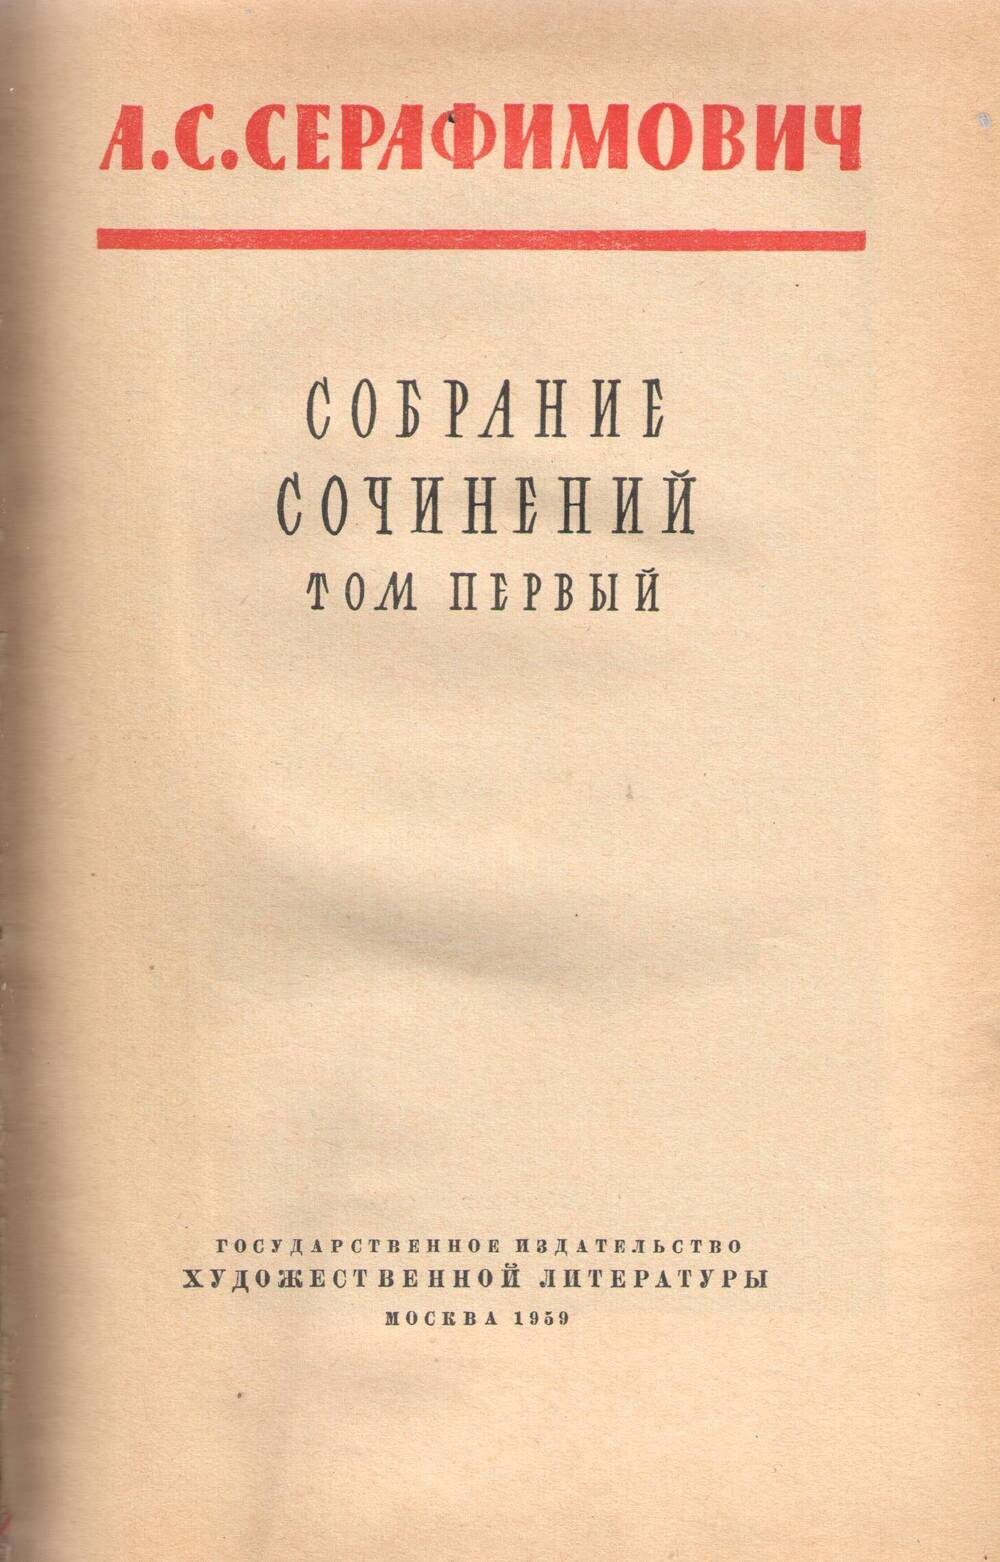 Книга.А.С. Серафимович, том 1.